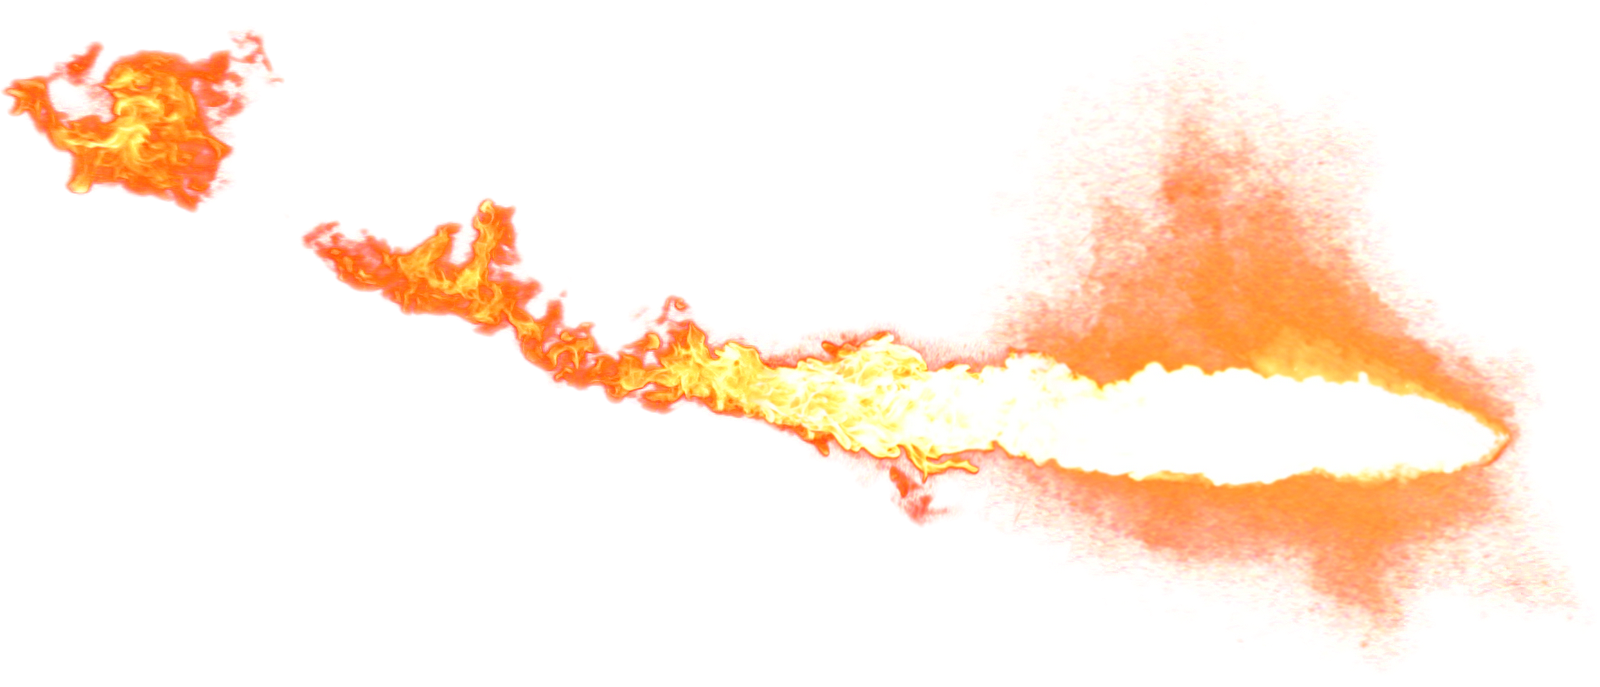 Fireball Smoke Free Clipart HD PNG Image